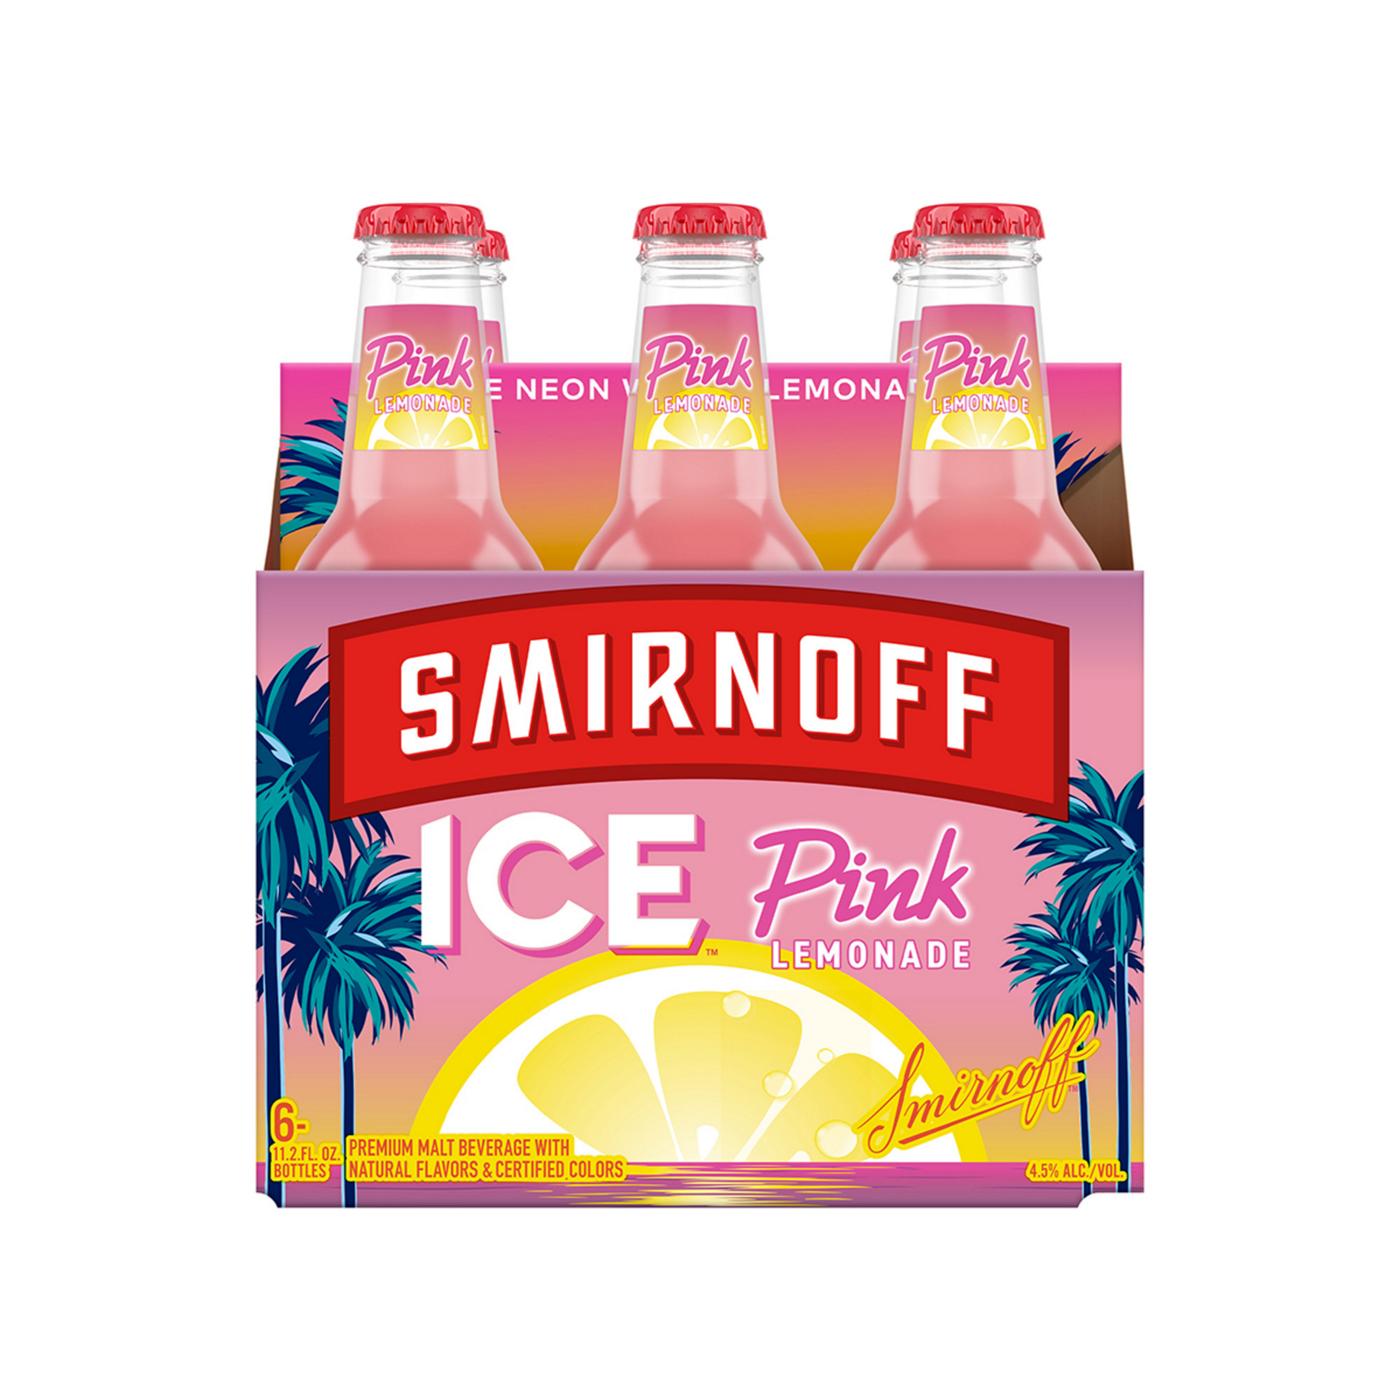 Smirnoff Ice Pink Lemonade; image 1 of 5